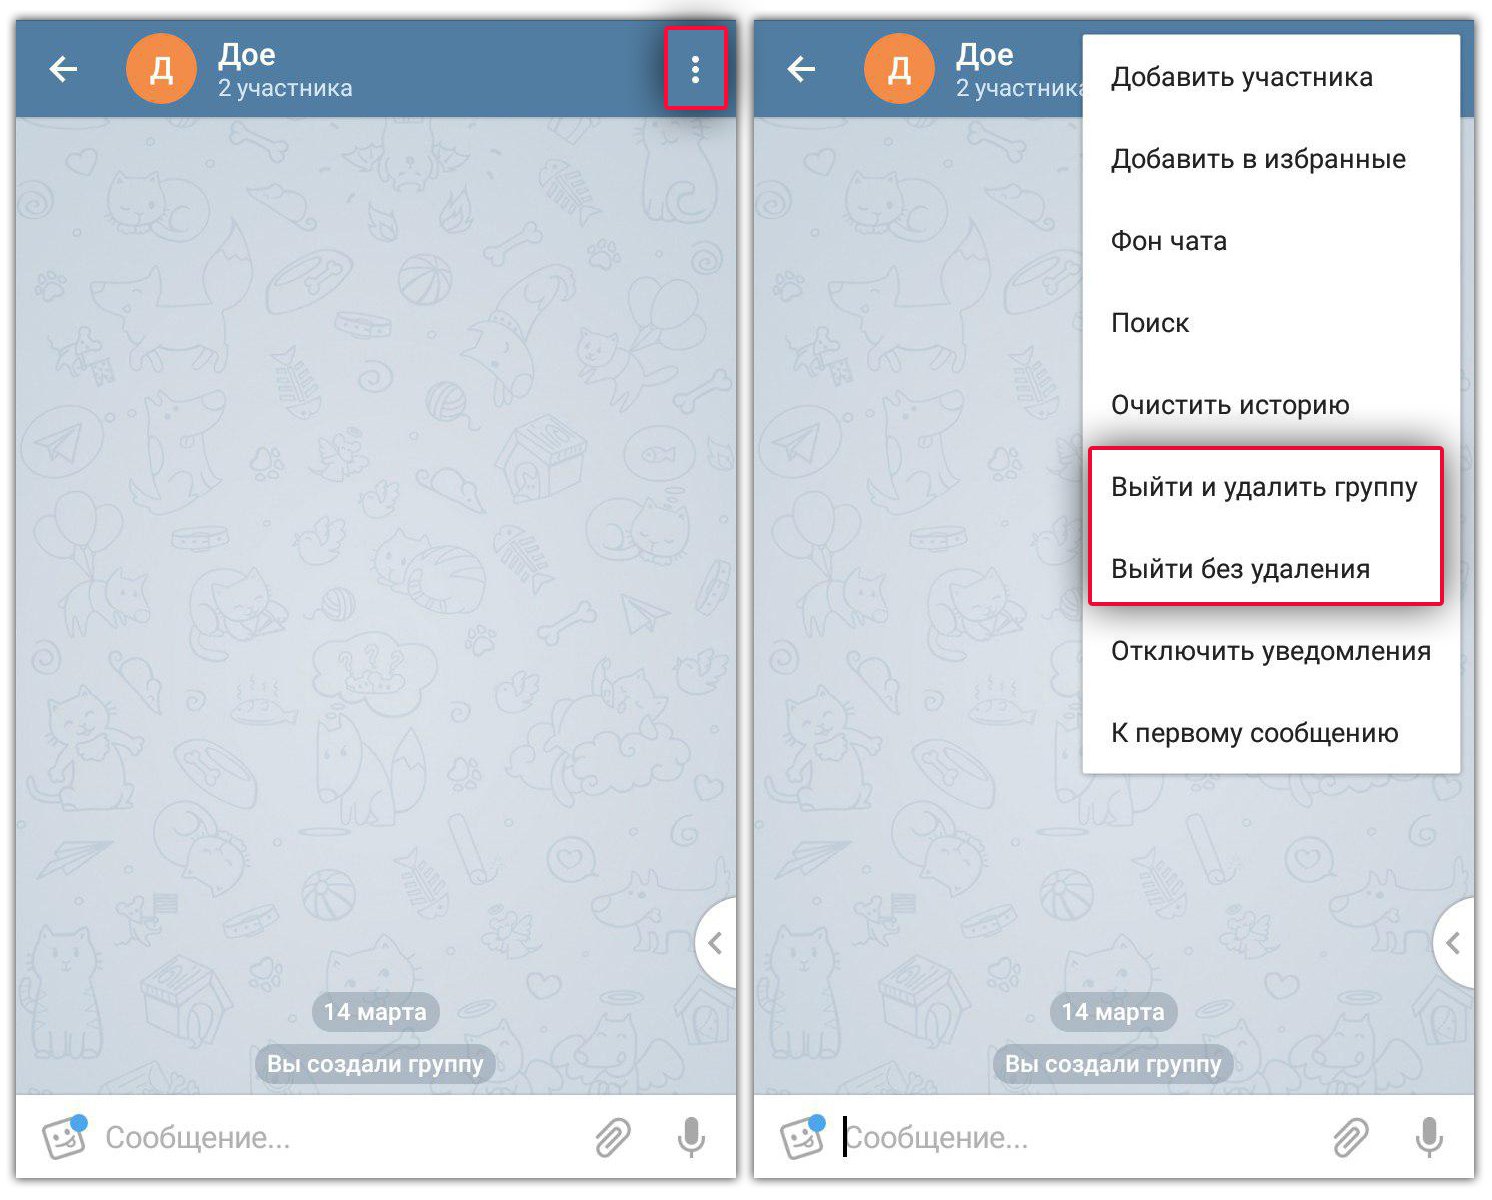 Как изменить английский на русский в телеграмме фото 98